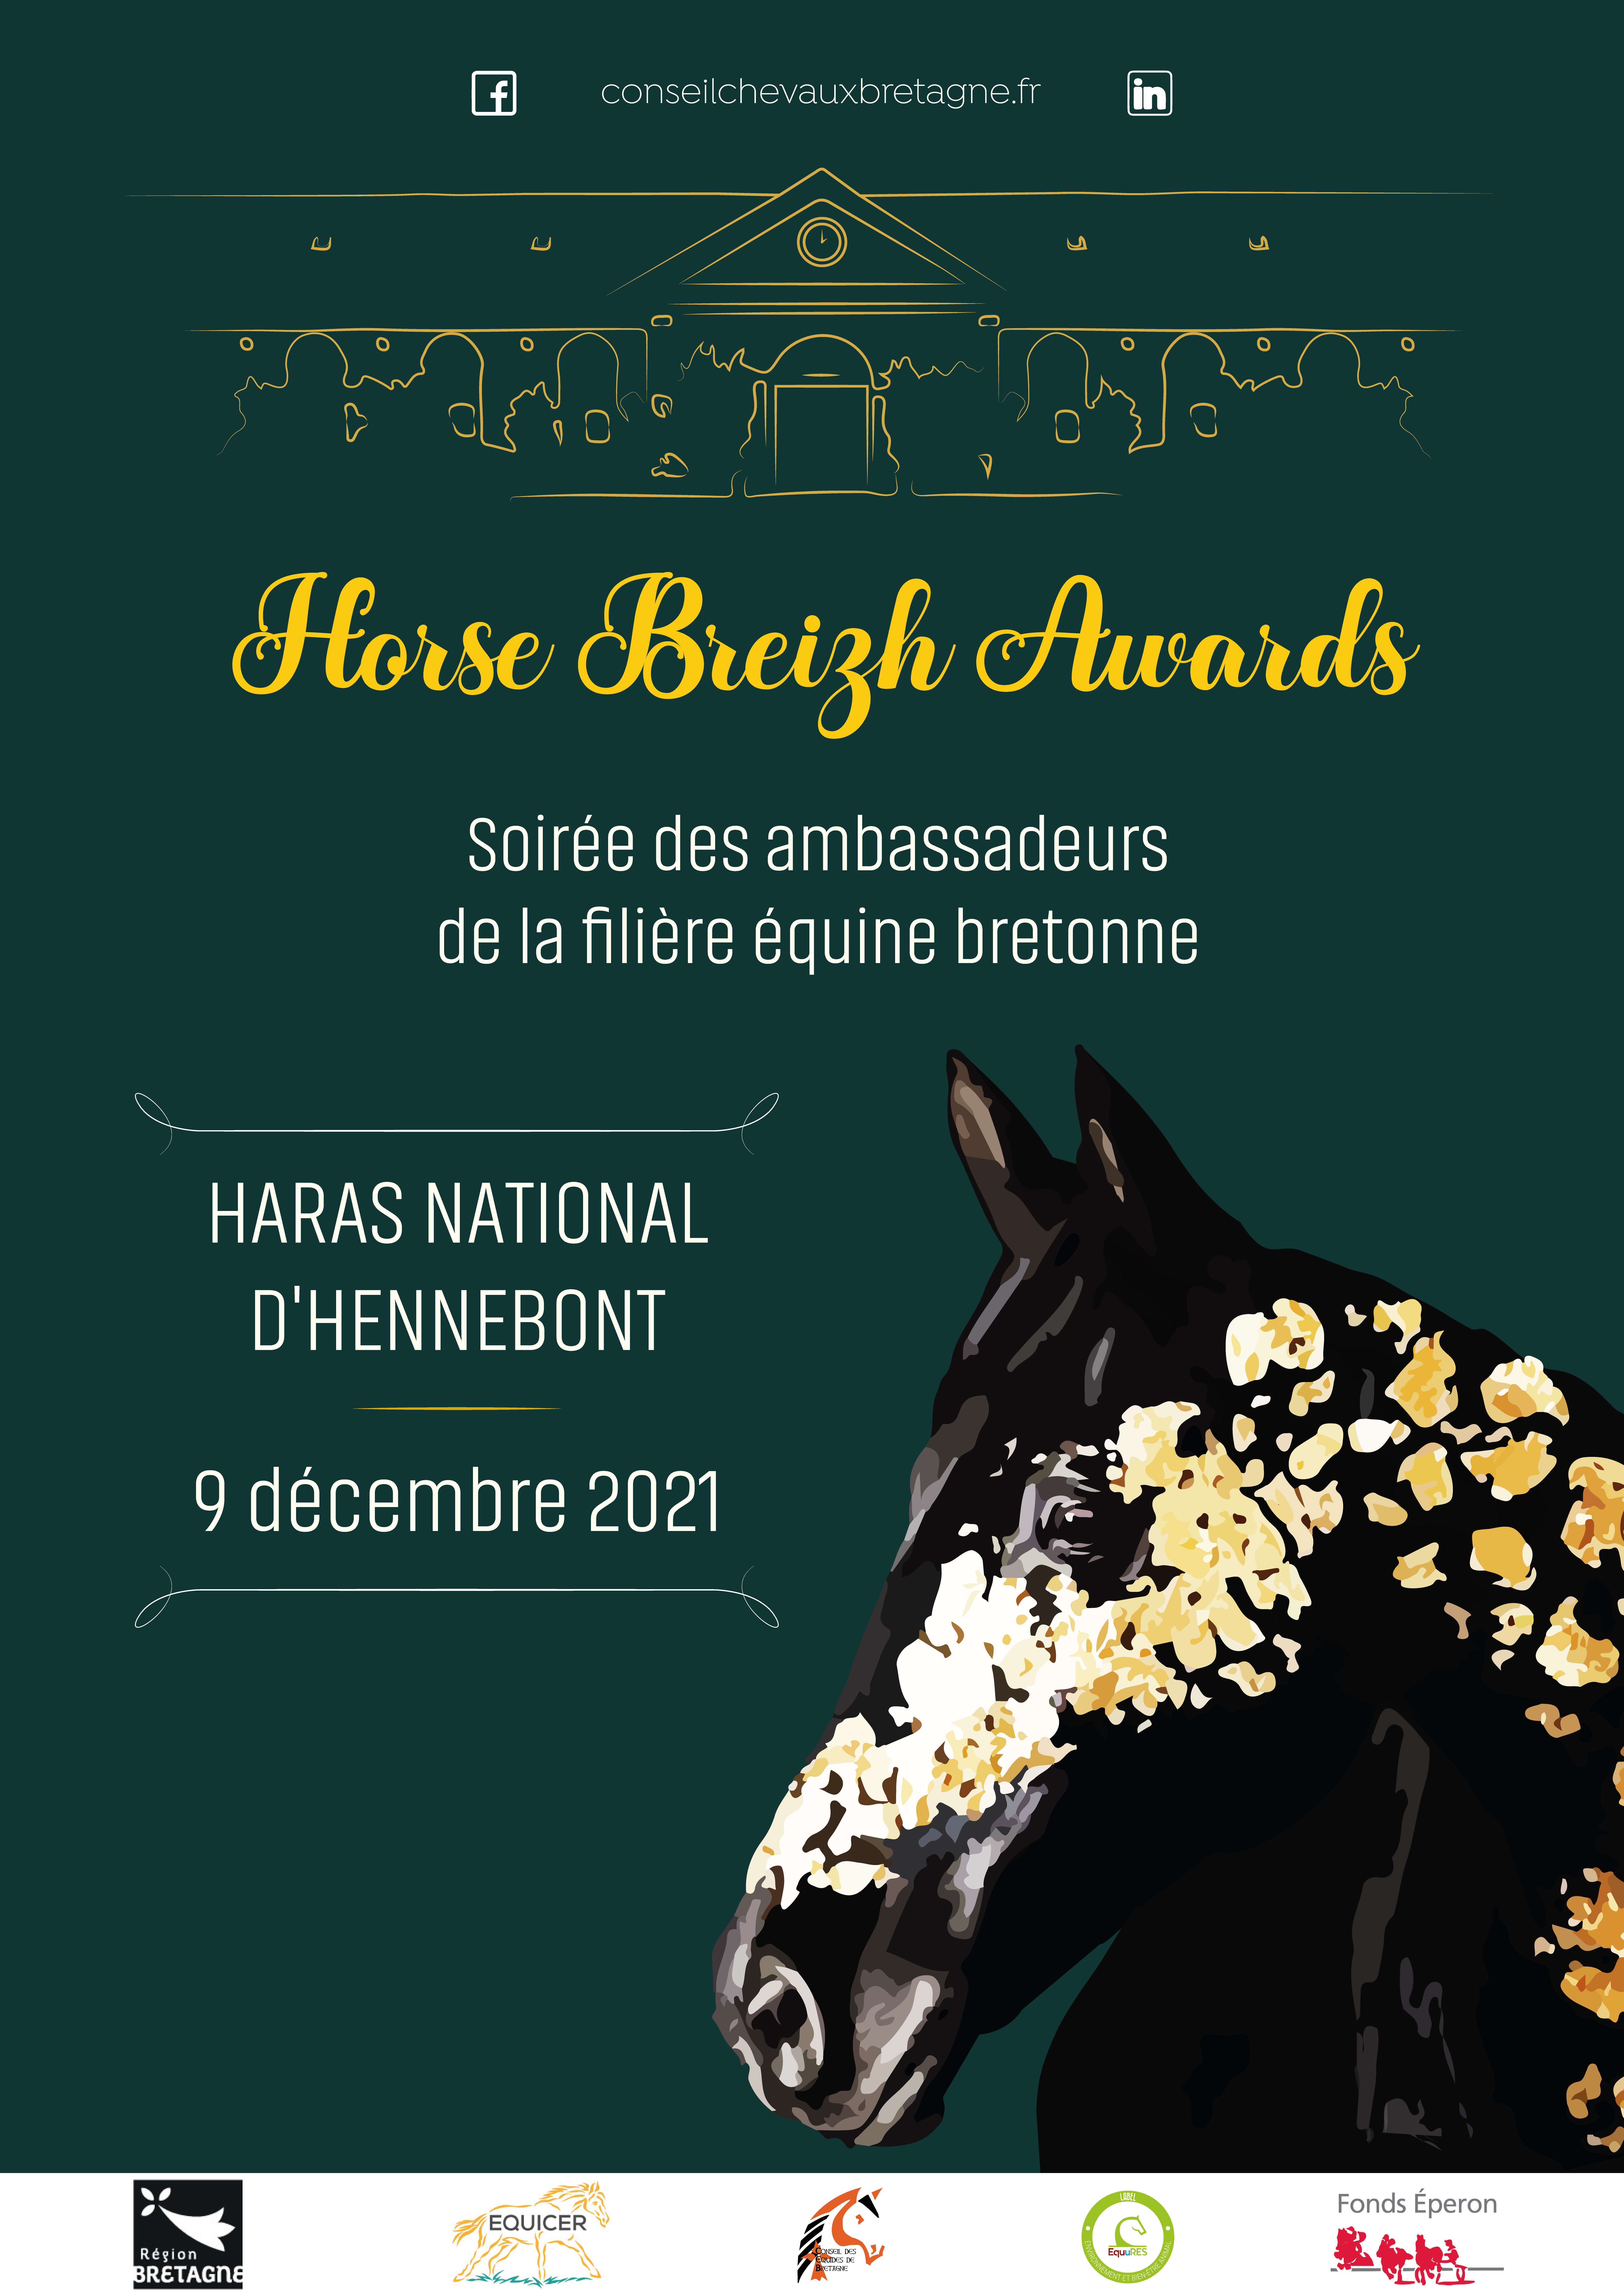 <REPLAY> HORSE BREIZH AWARDS - Soirée des ambassadeurs de la filière équine bretonne